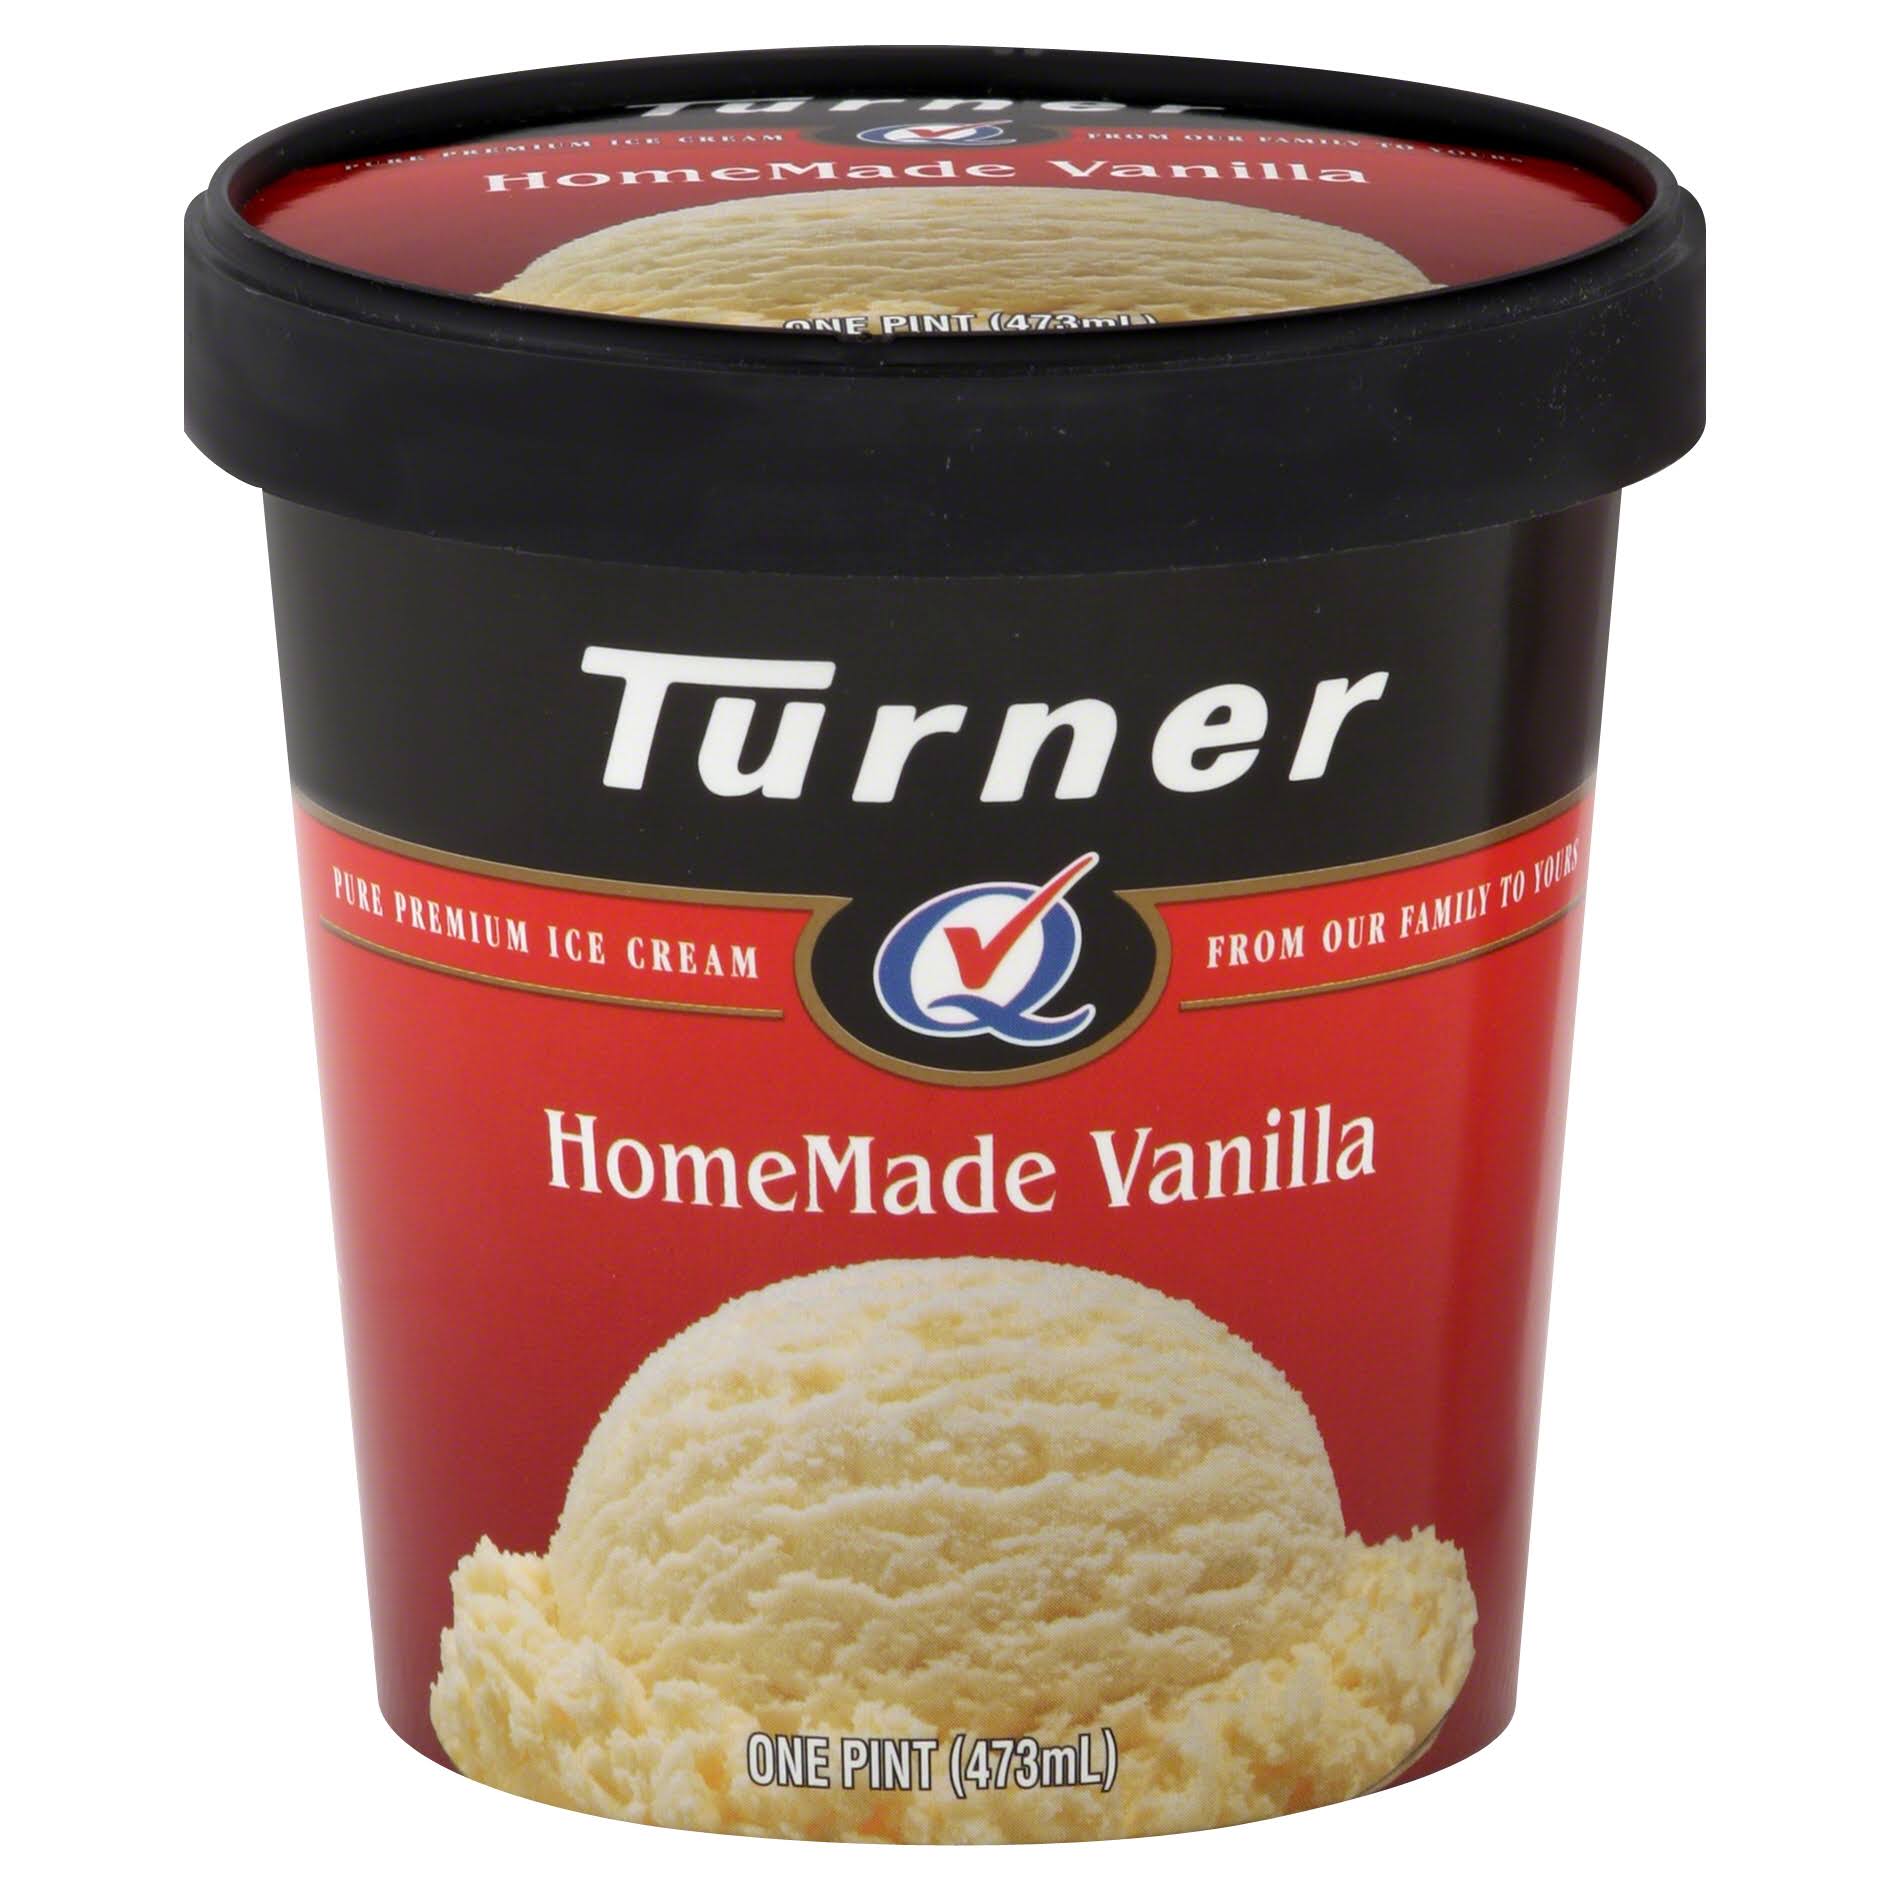 Turner Ice Cream, HomeMade Vanilla - 1 pt